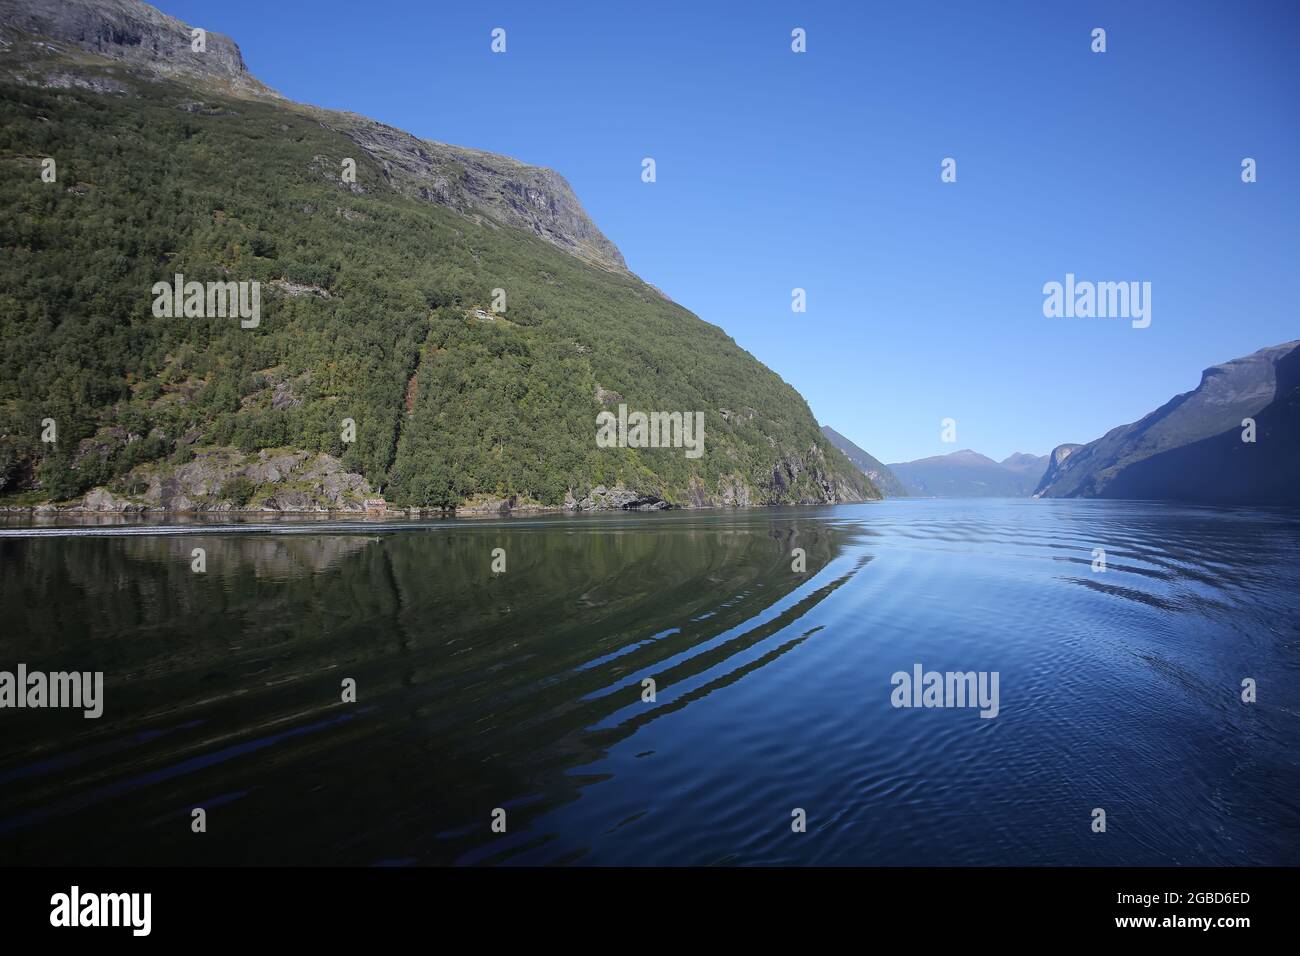 Landschaftlich reizvolle Fahrt auf dem Geiranger Fjord. Schöne Landschaft mit Reflexionen der Berge an einem ruhigen Sommertag, norwegischen Fjorden, Norwegen. Stockfoto